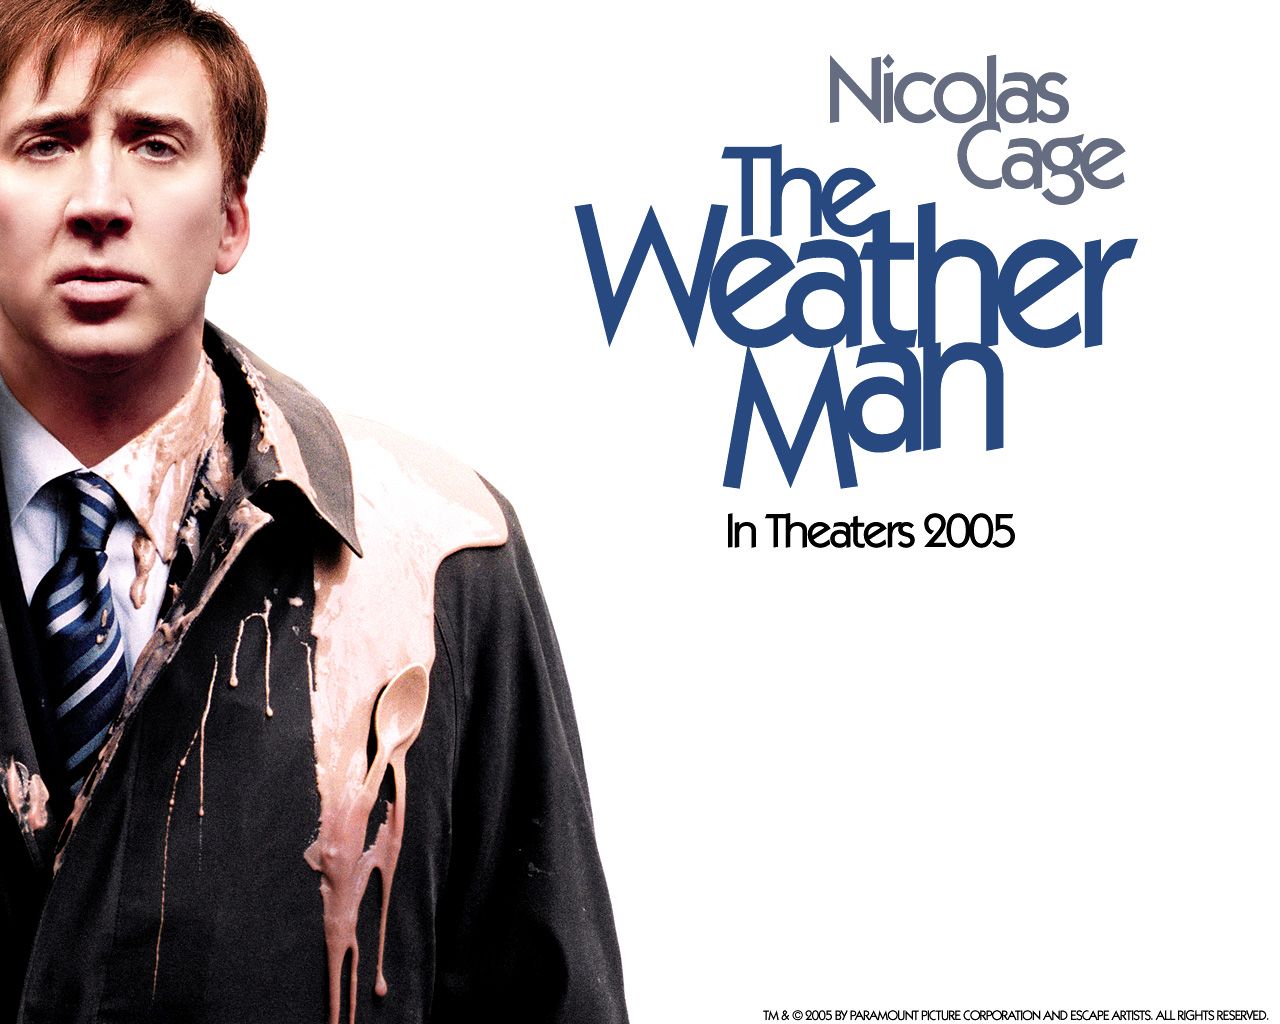 Nicolas Cage - Nicolas Cage in The Weather Man Wallpaper 1 1280x1024